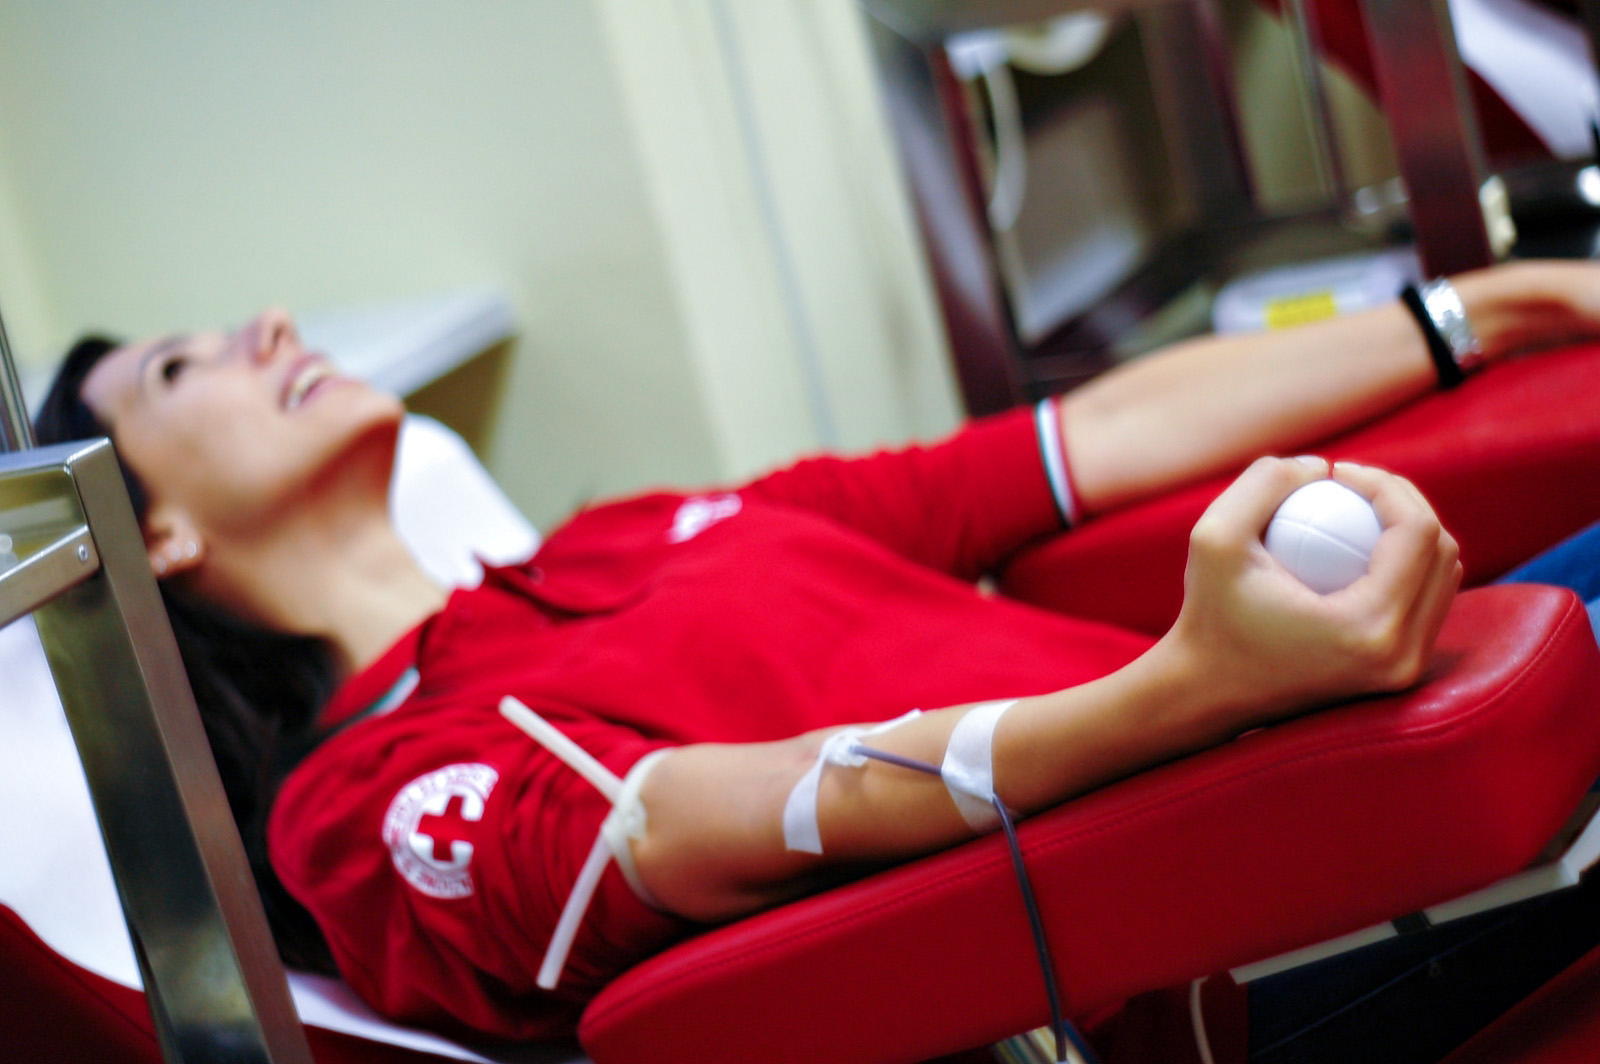 Raccolta e Donazione Sangue.Croce Rossa Italiana – Comitato Area Metropolitana di Roma Capitale.